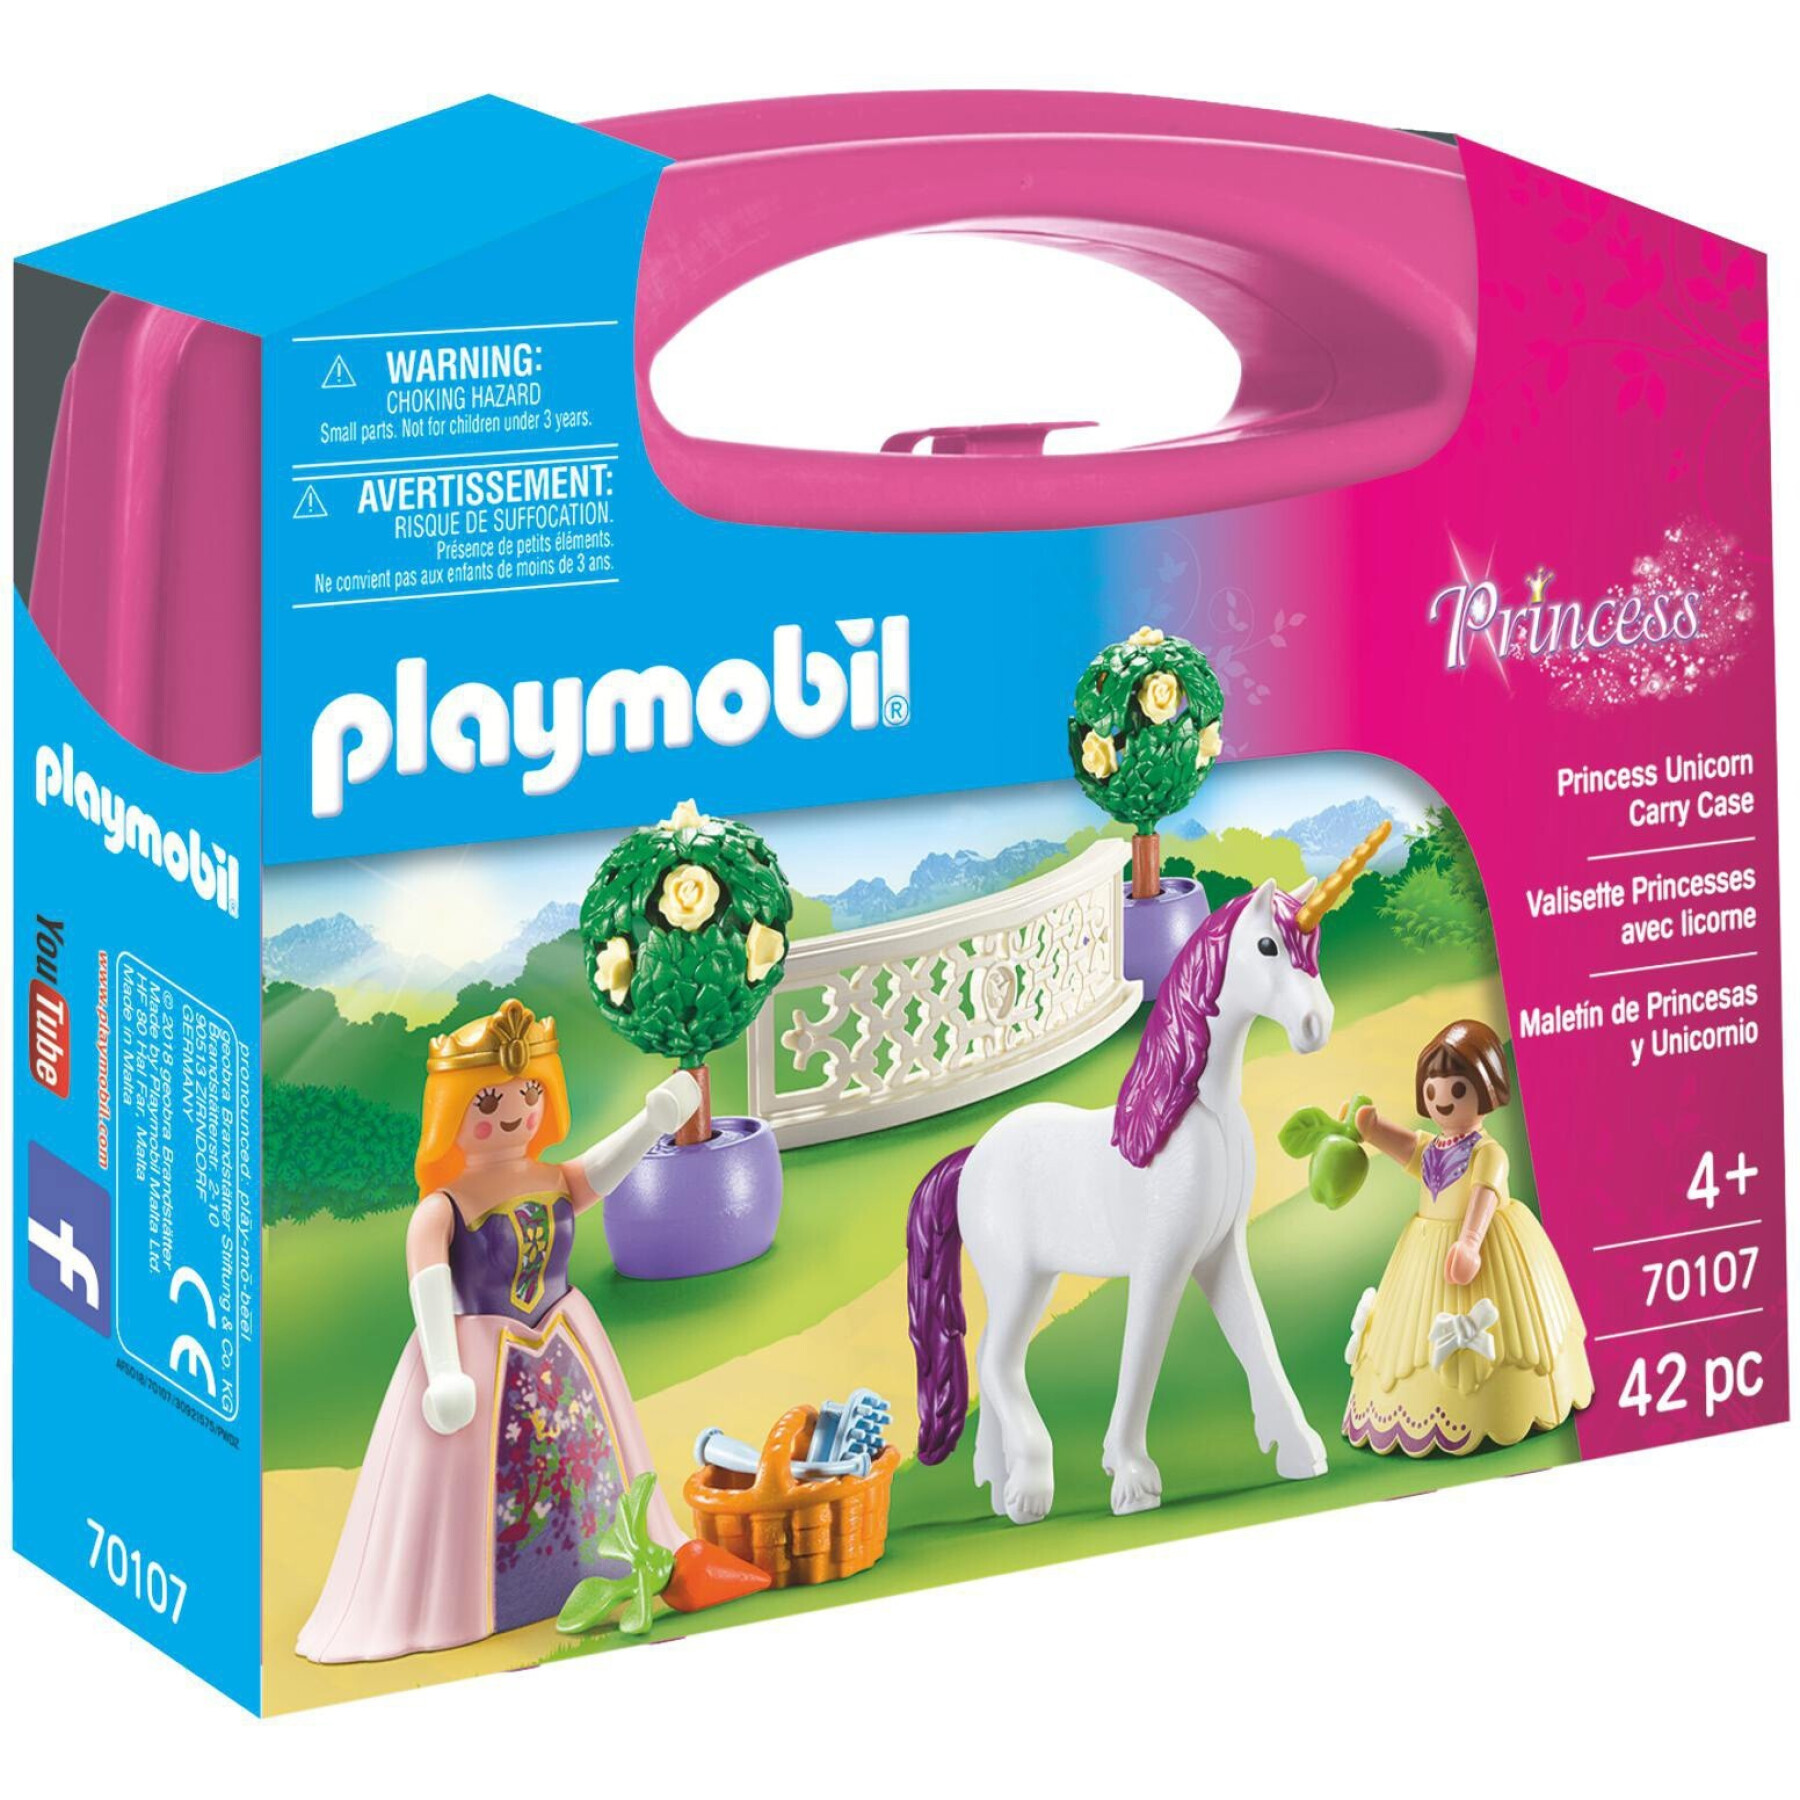 Valisette figurine Princesses + Licorne Playmobil